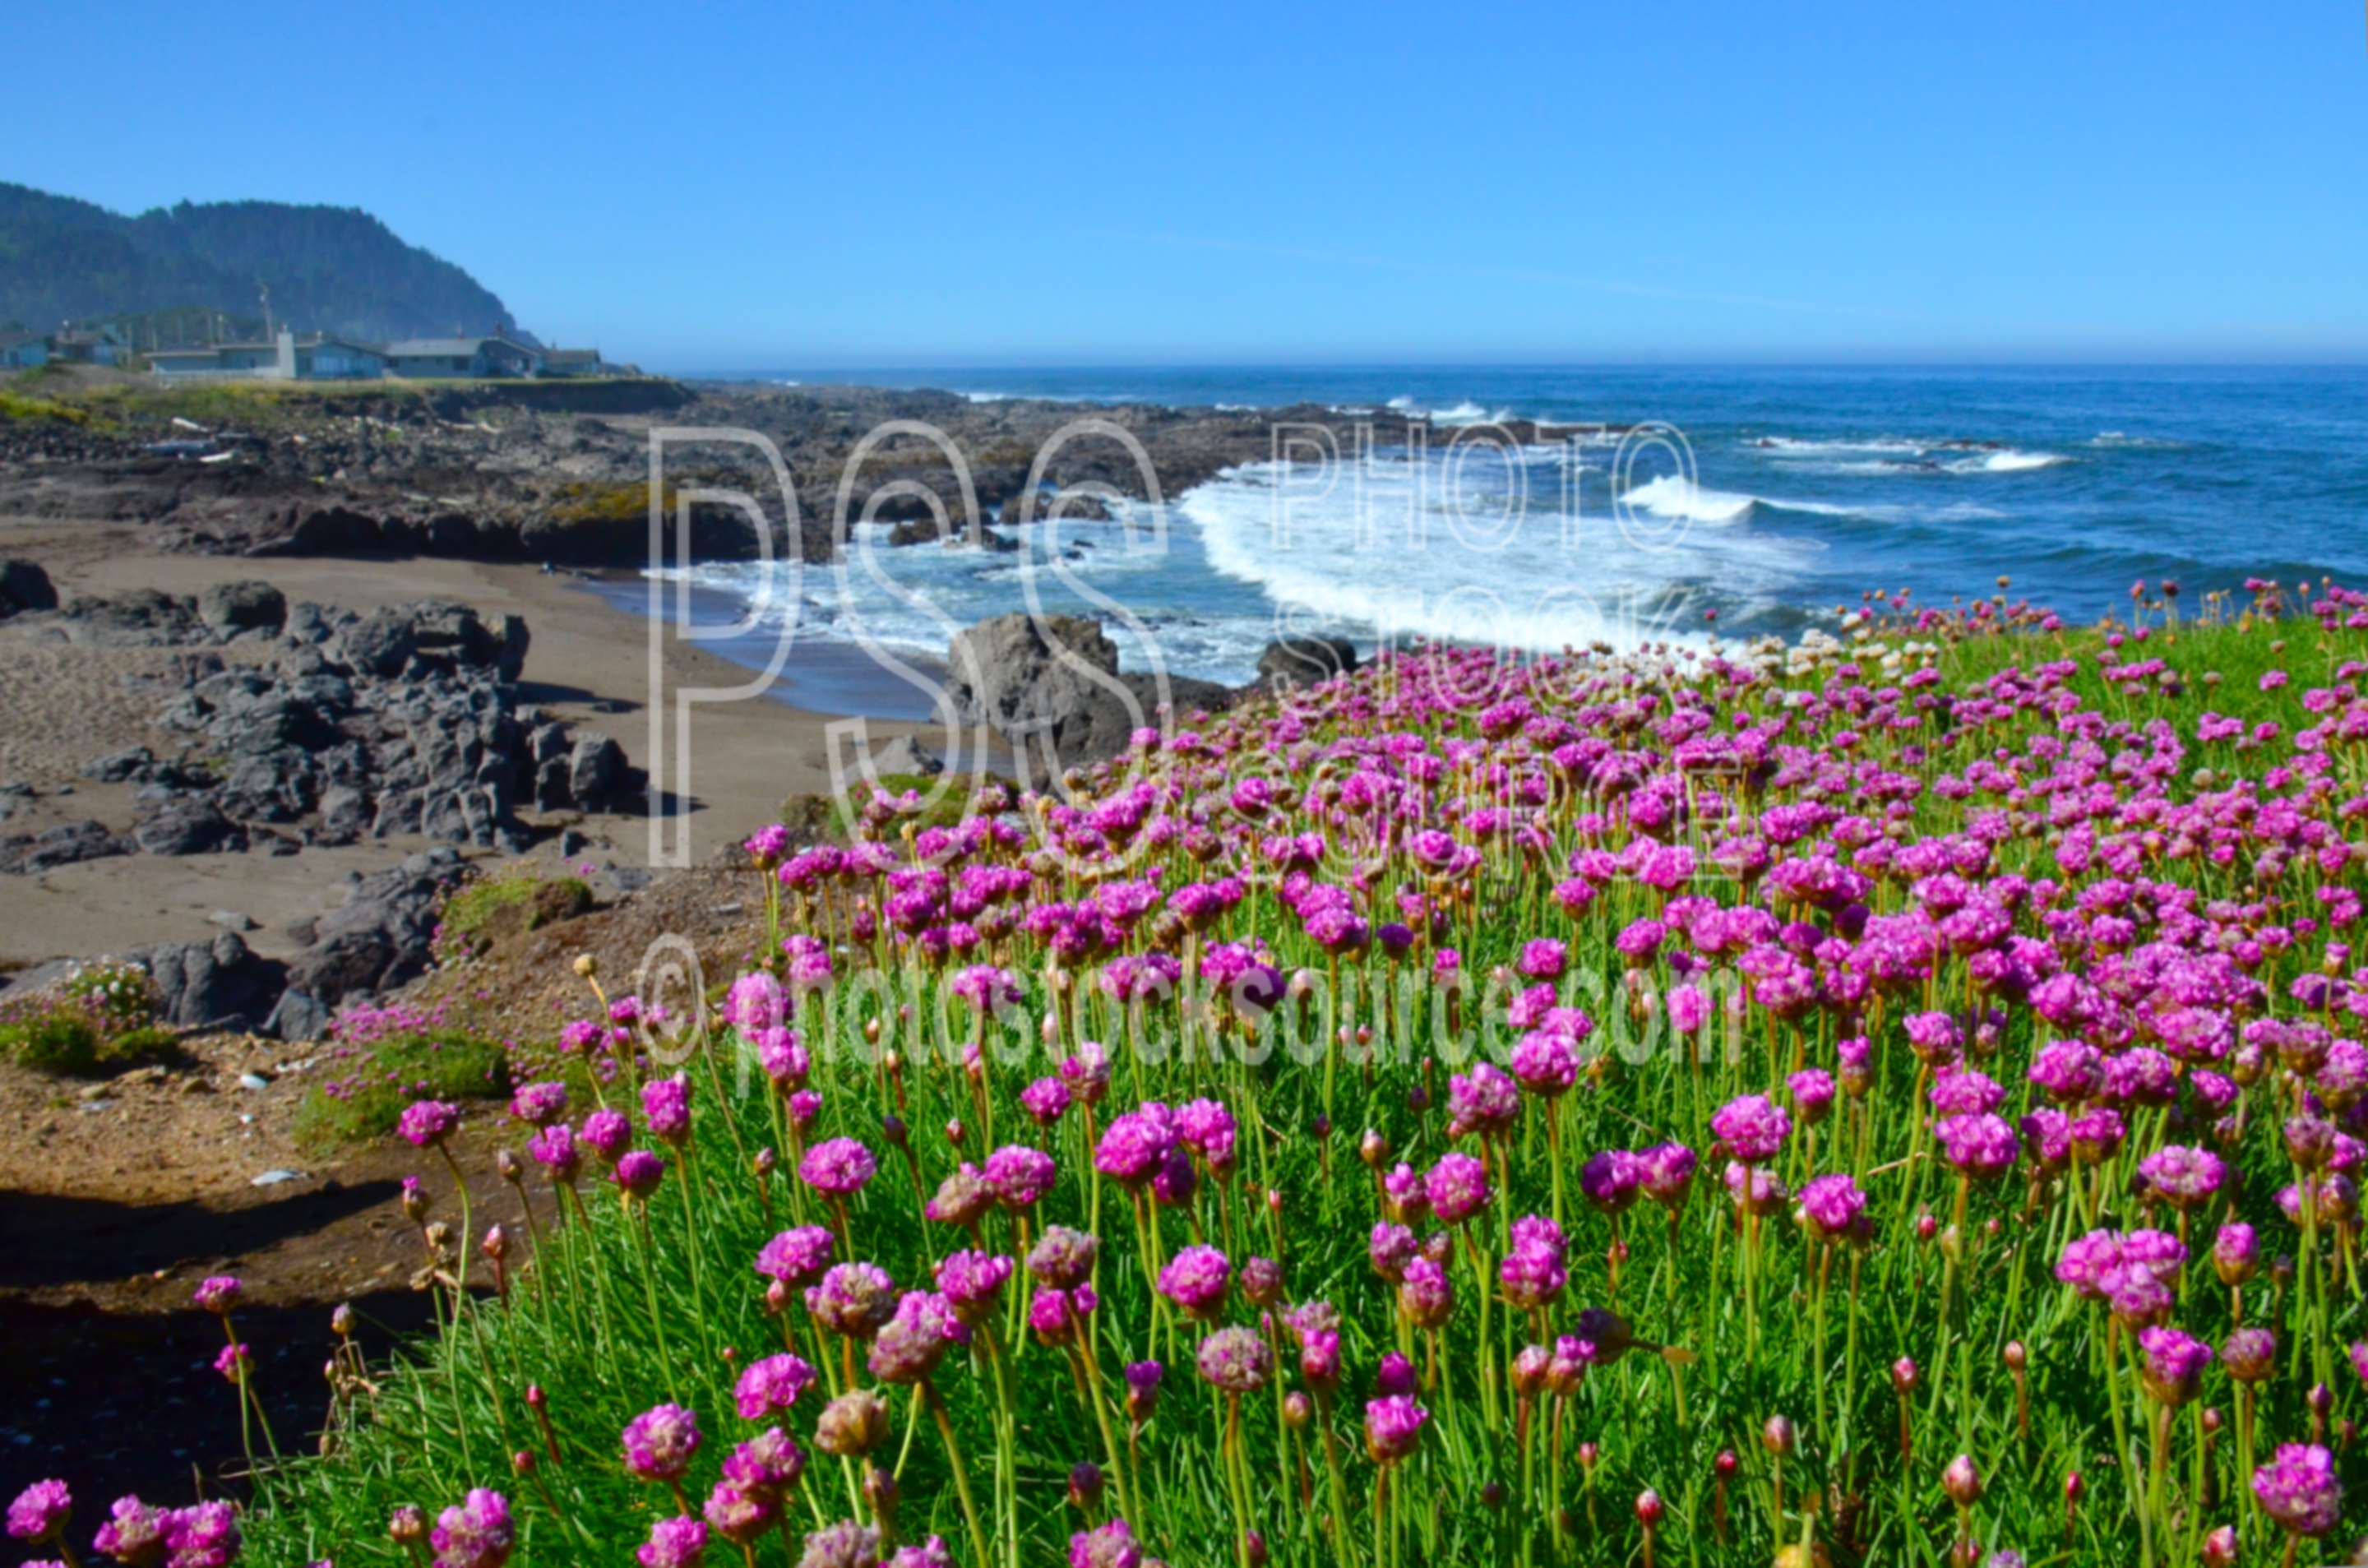 Sea Pink Flowers,beach,sand,ocean,flowers,coast,waves,wildflowers